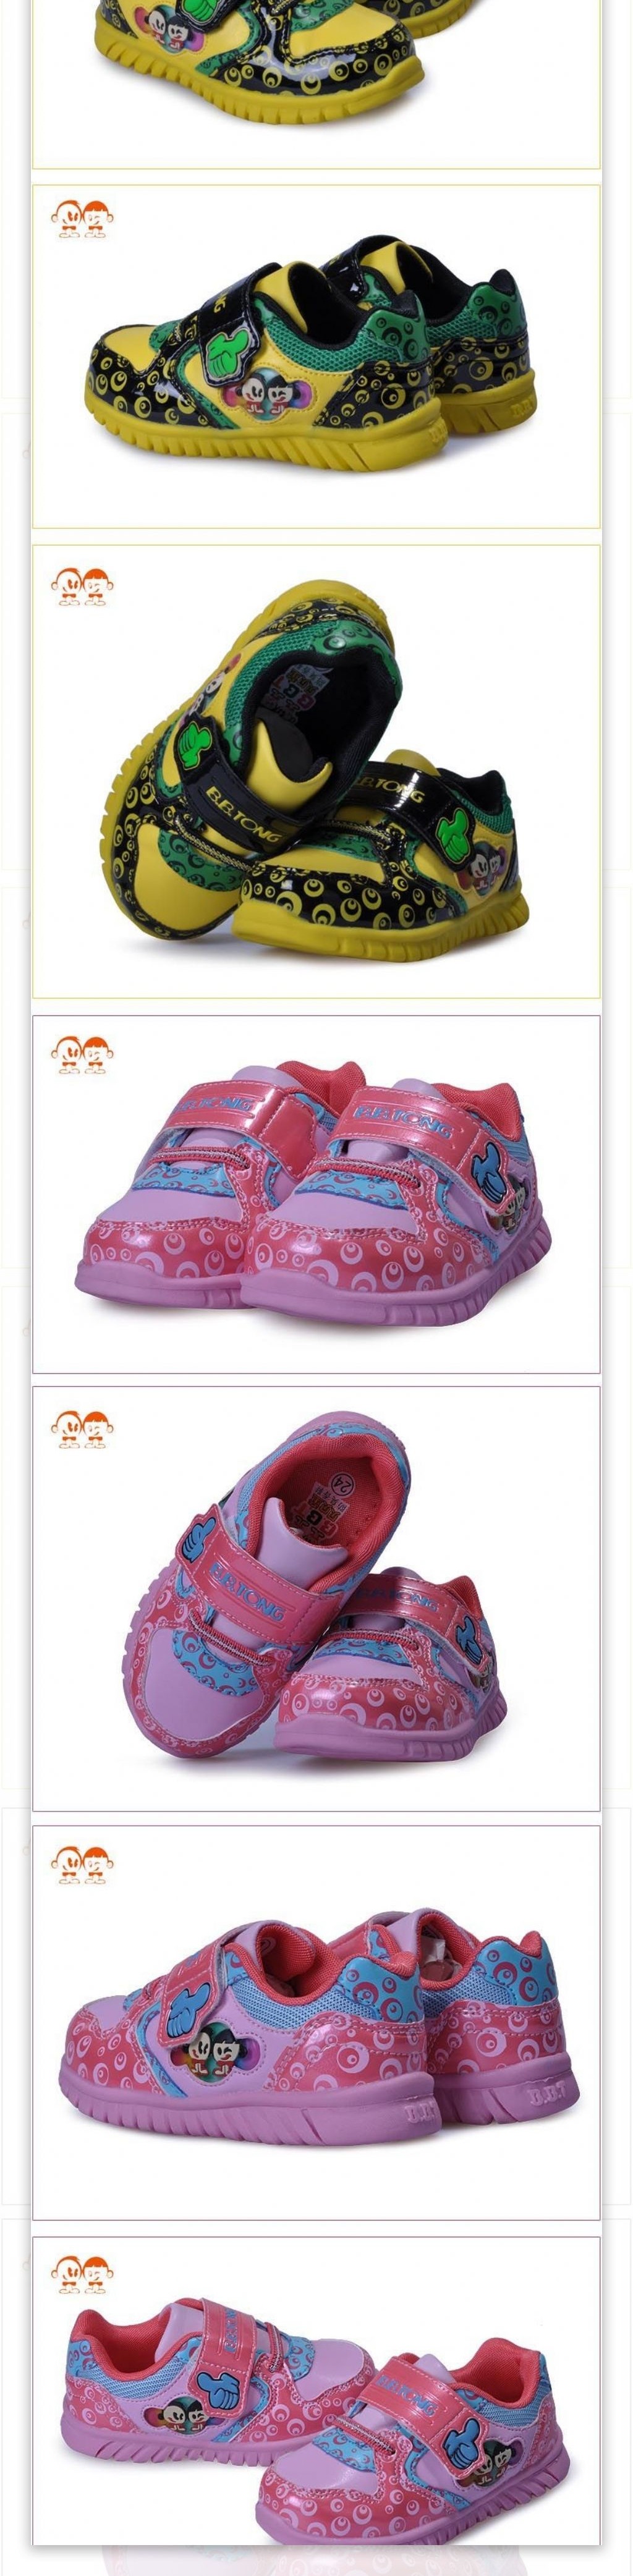 婴儿鞋子详情页